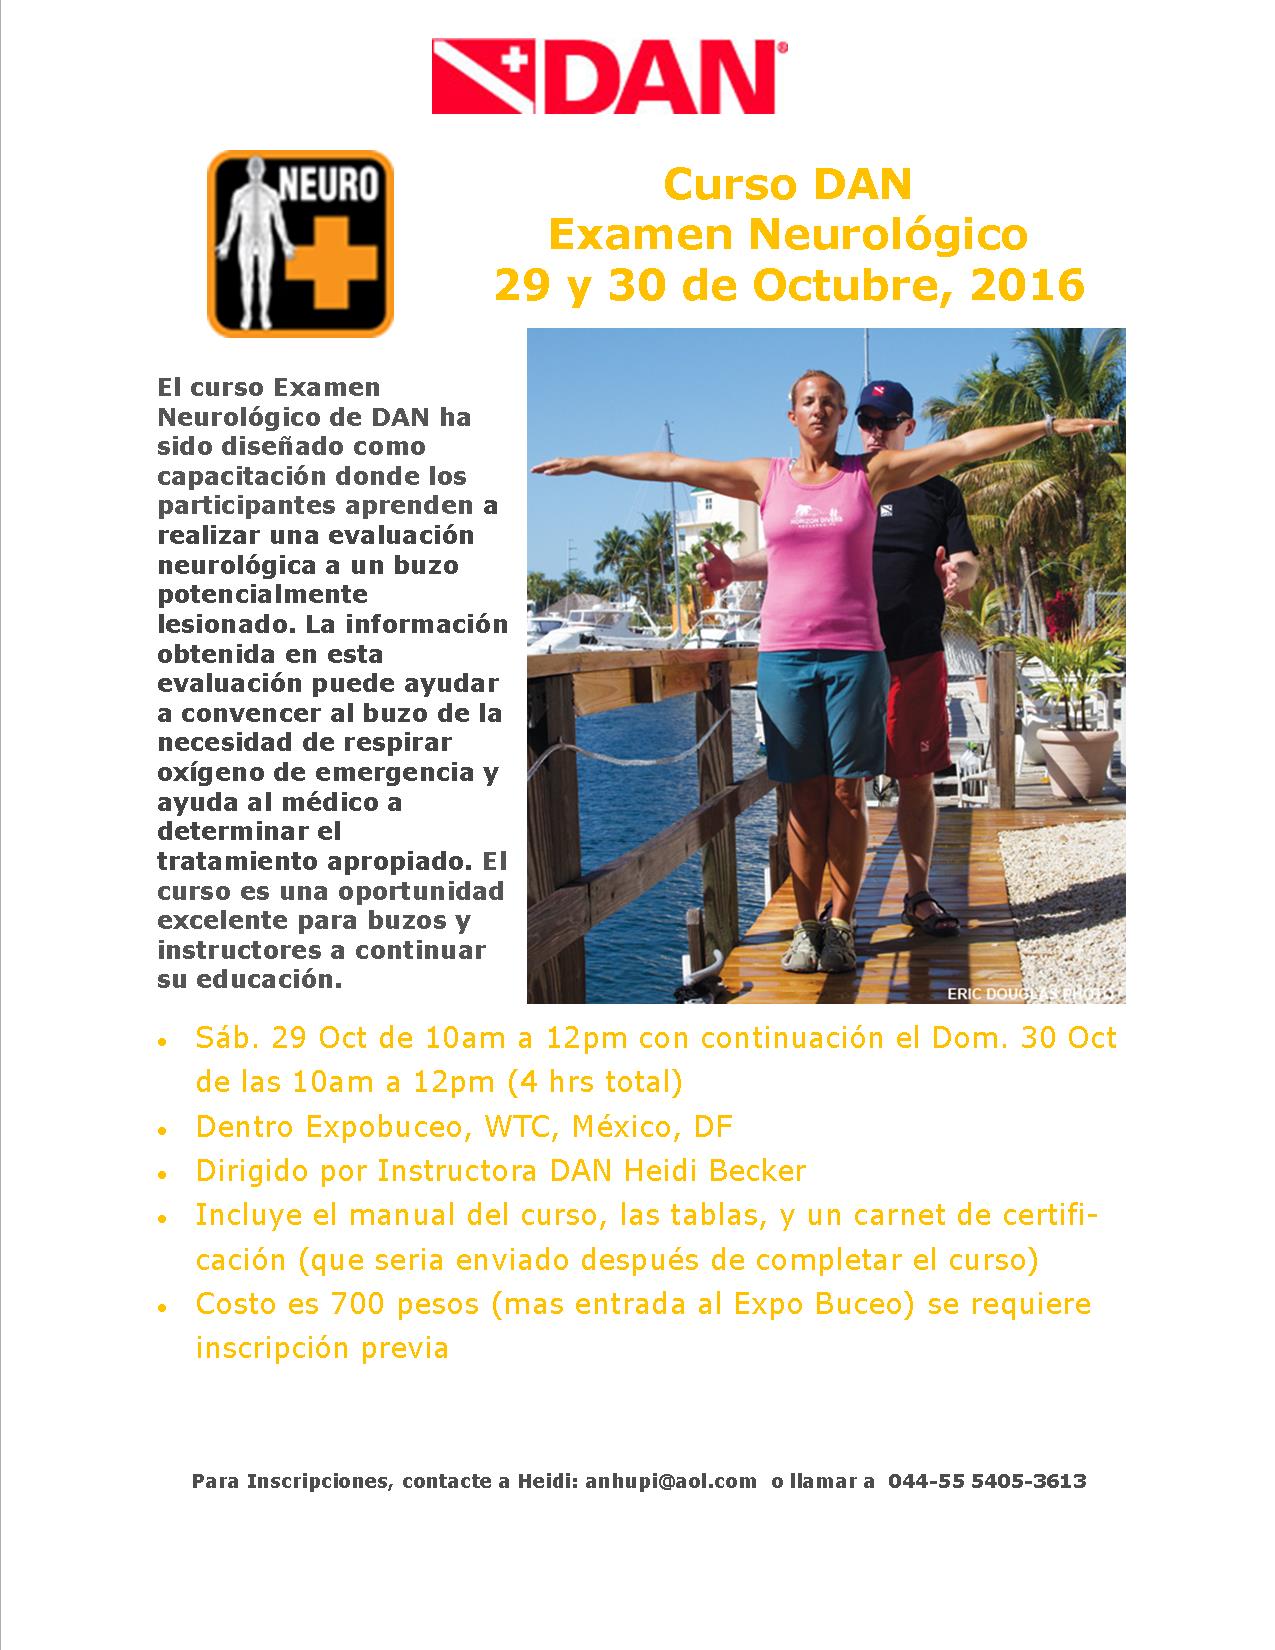 Expo Buceo Neuro Exam Course Promo 2016